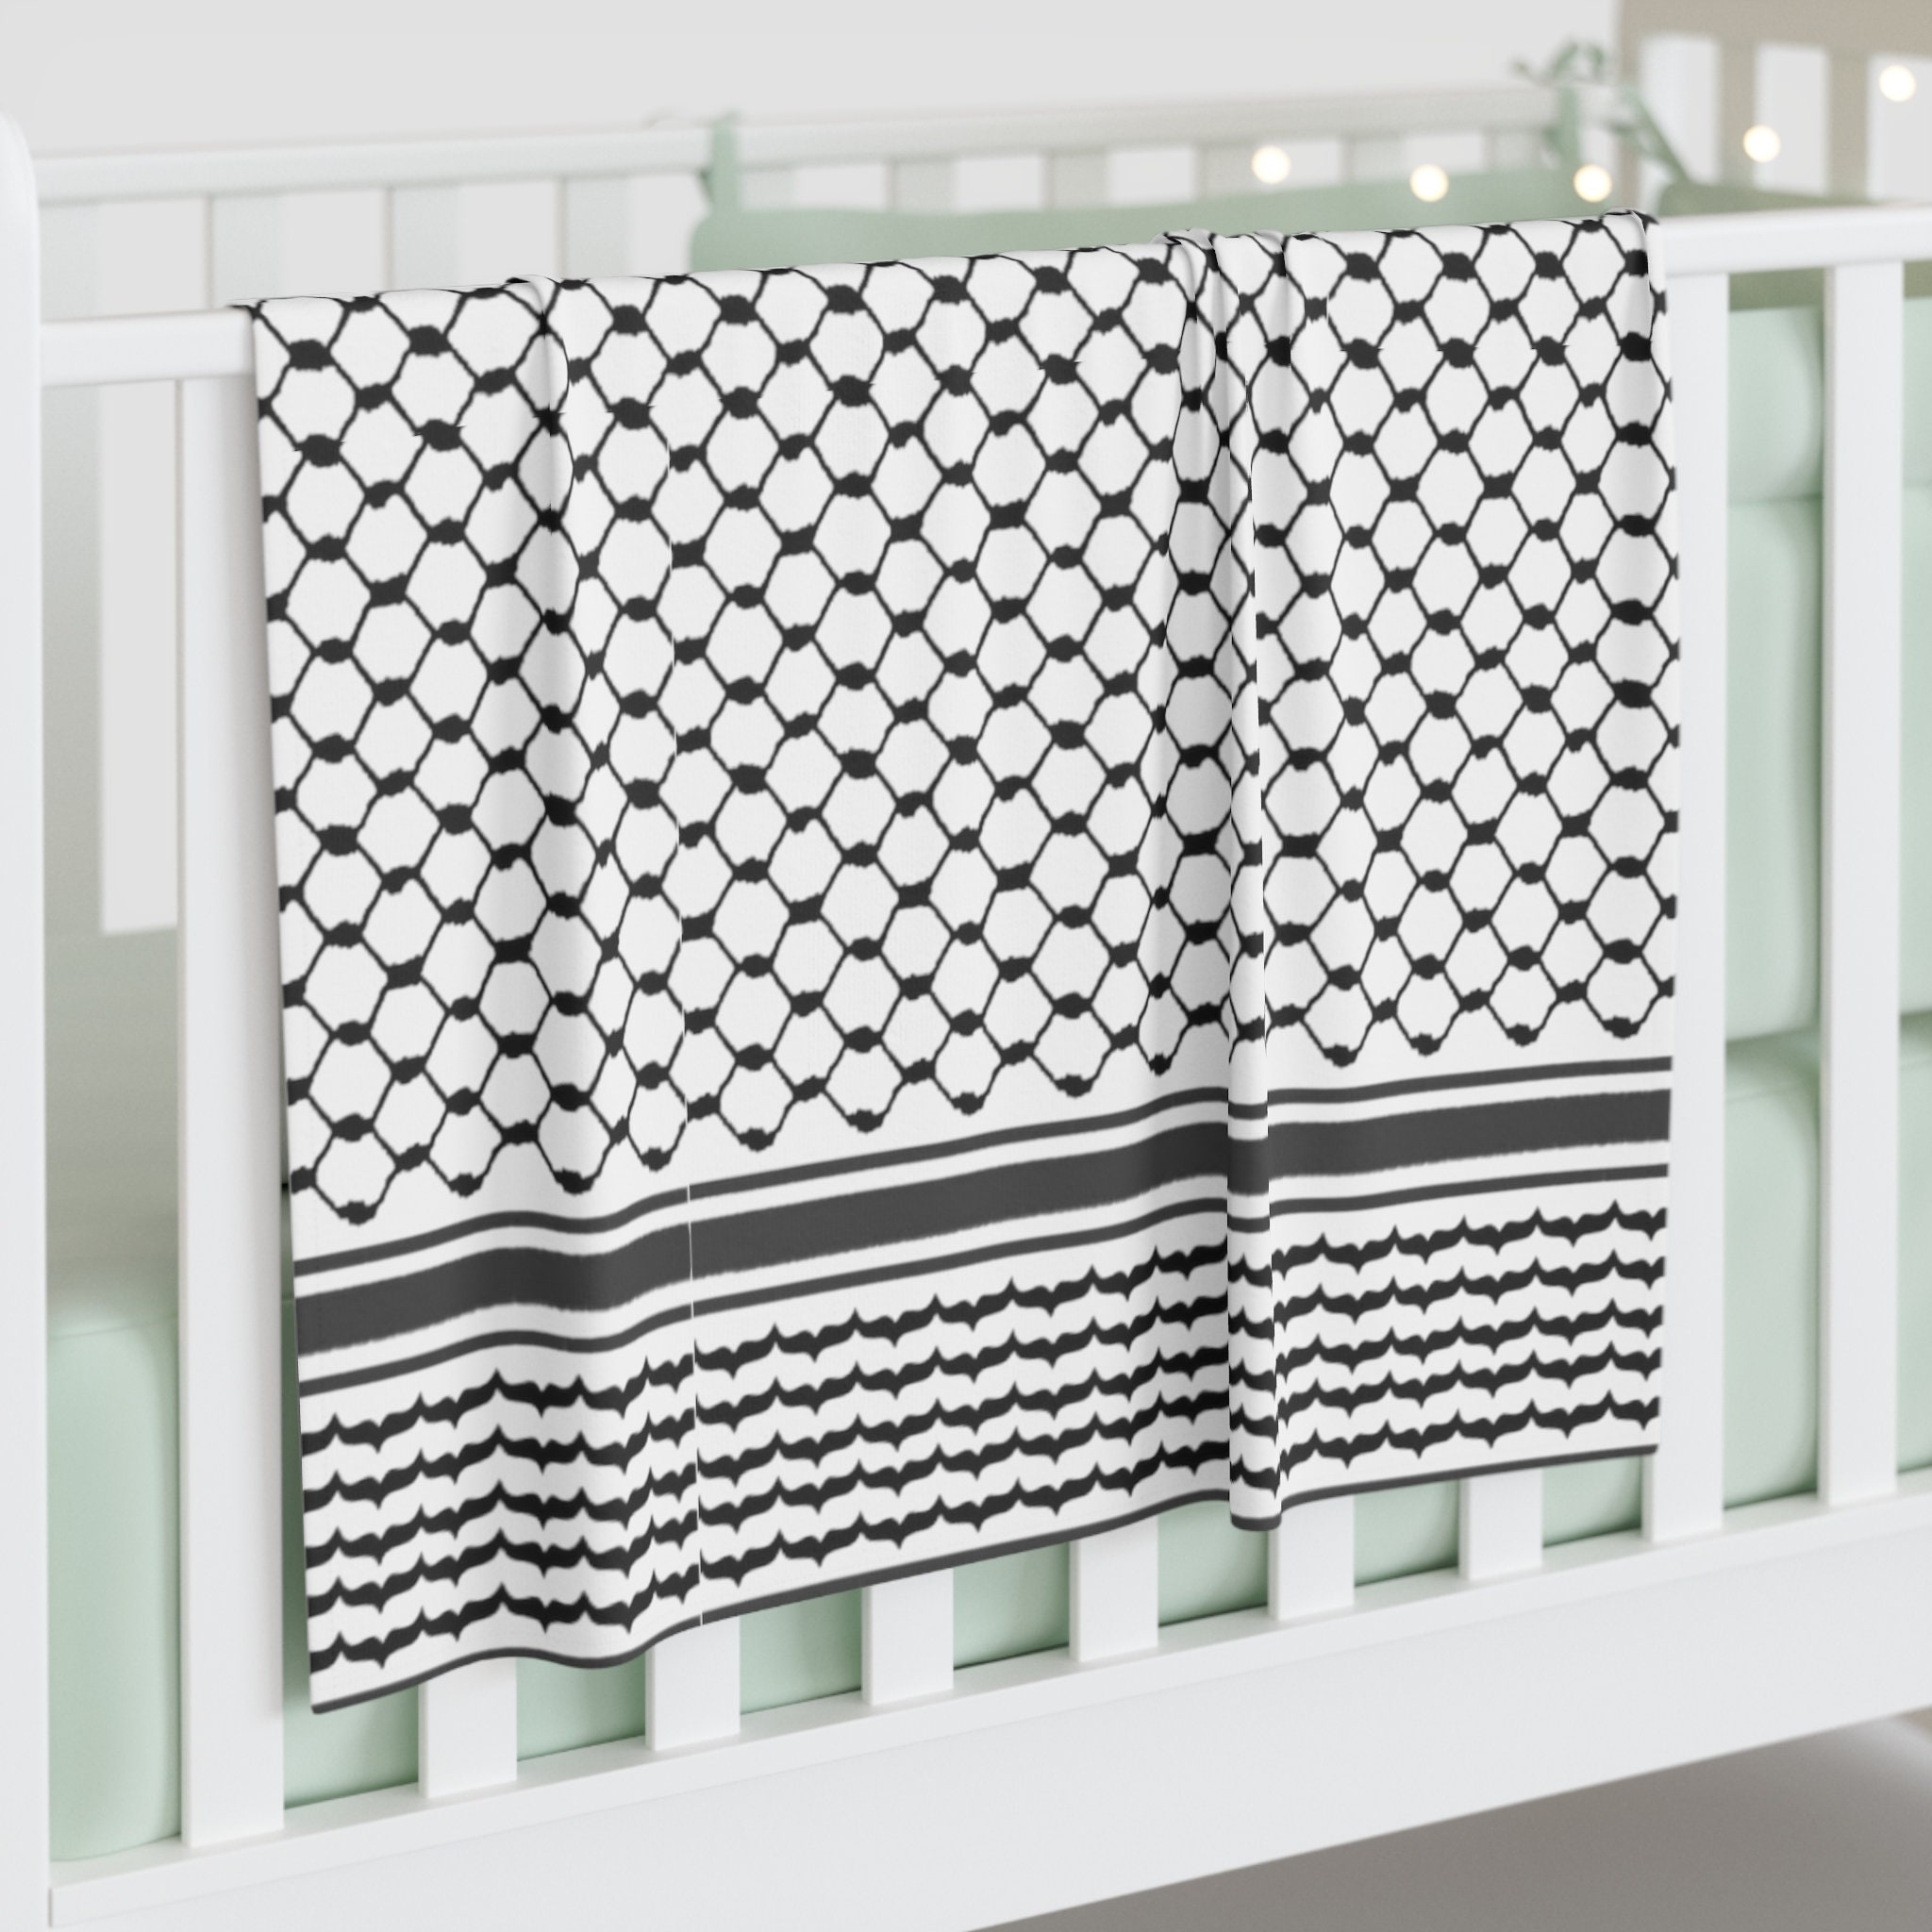 Loom Knit ePattern: Playtime Baby Blanket